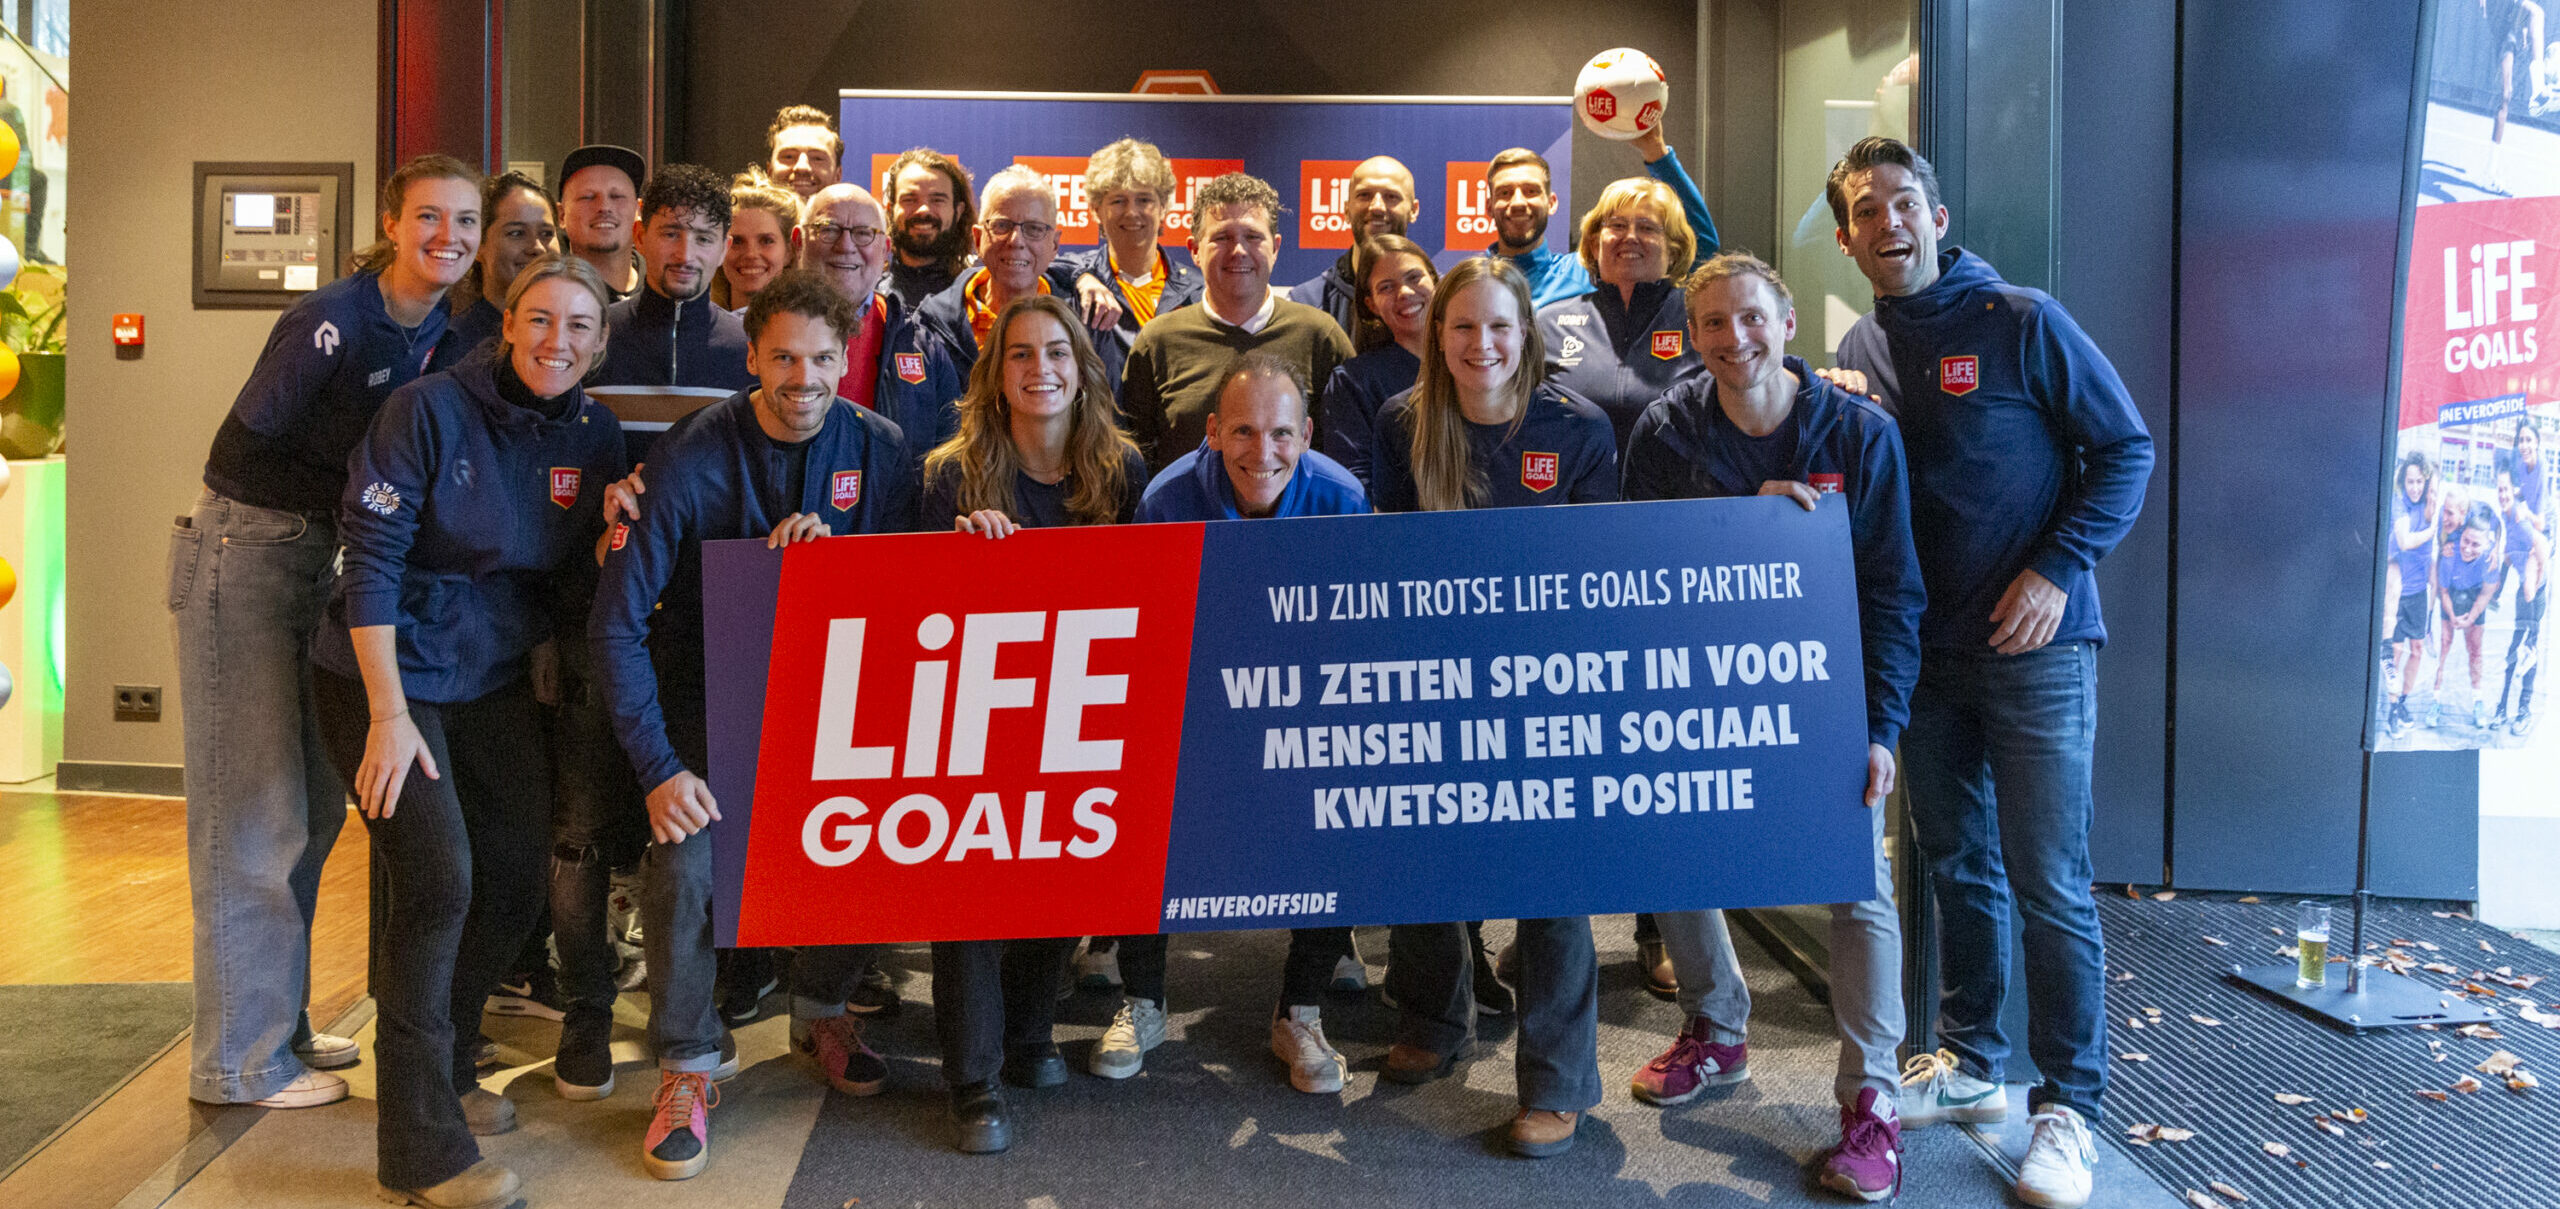 Life Goals netwerkbijeenkomst Sporten en Mentale Gezondheid groot succes